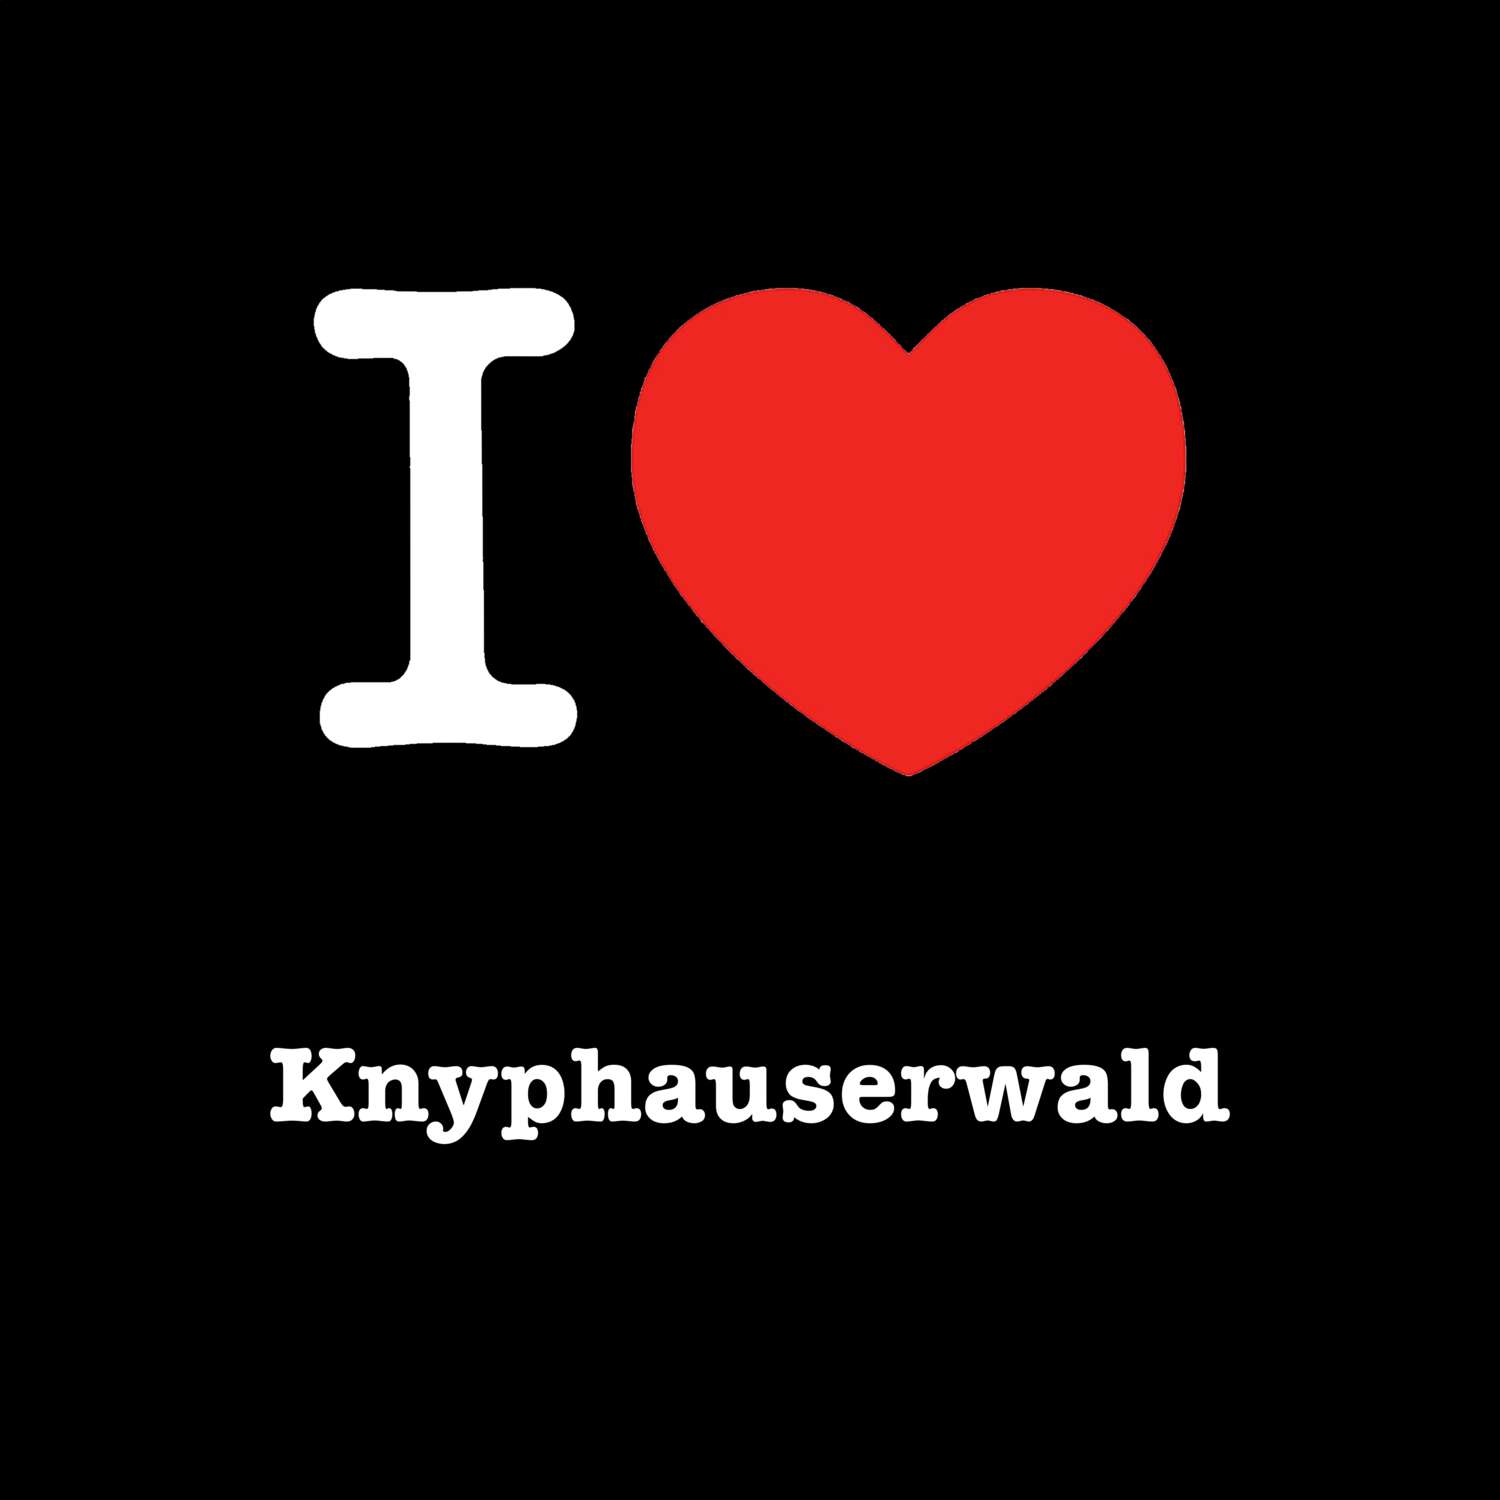 Knyphauserwald T-Shirt »I love«